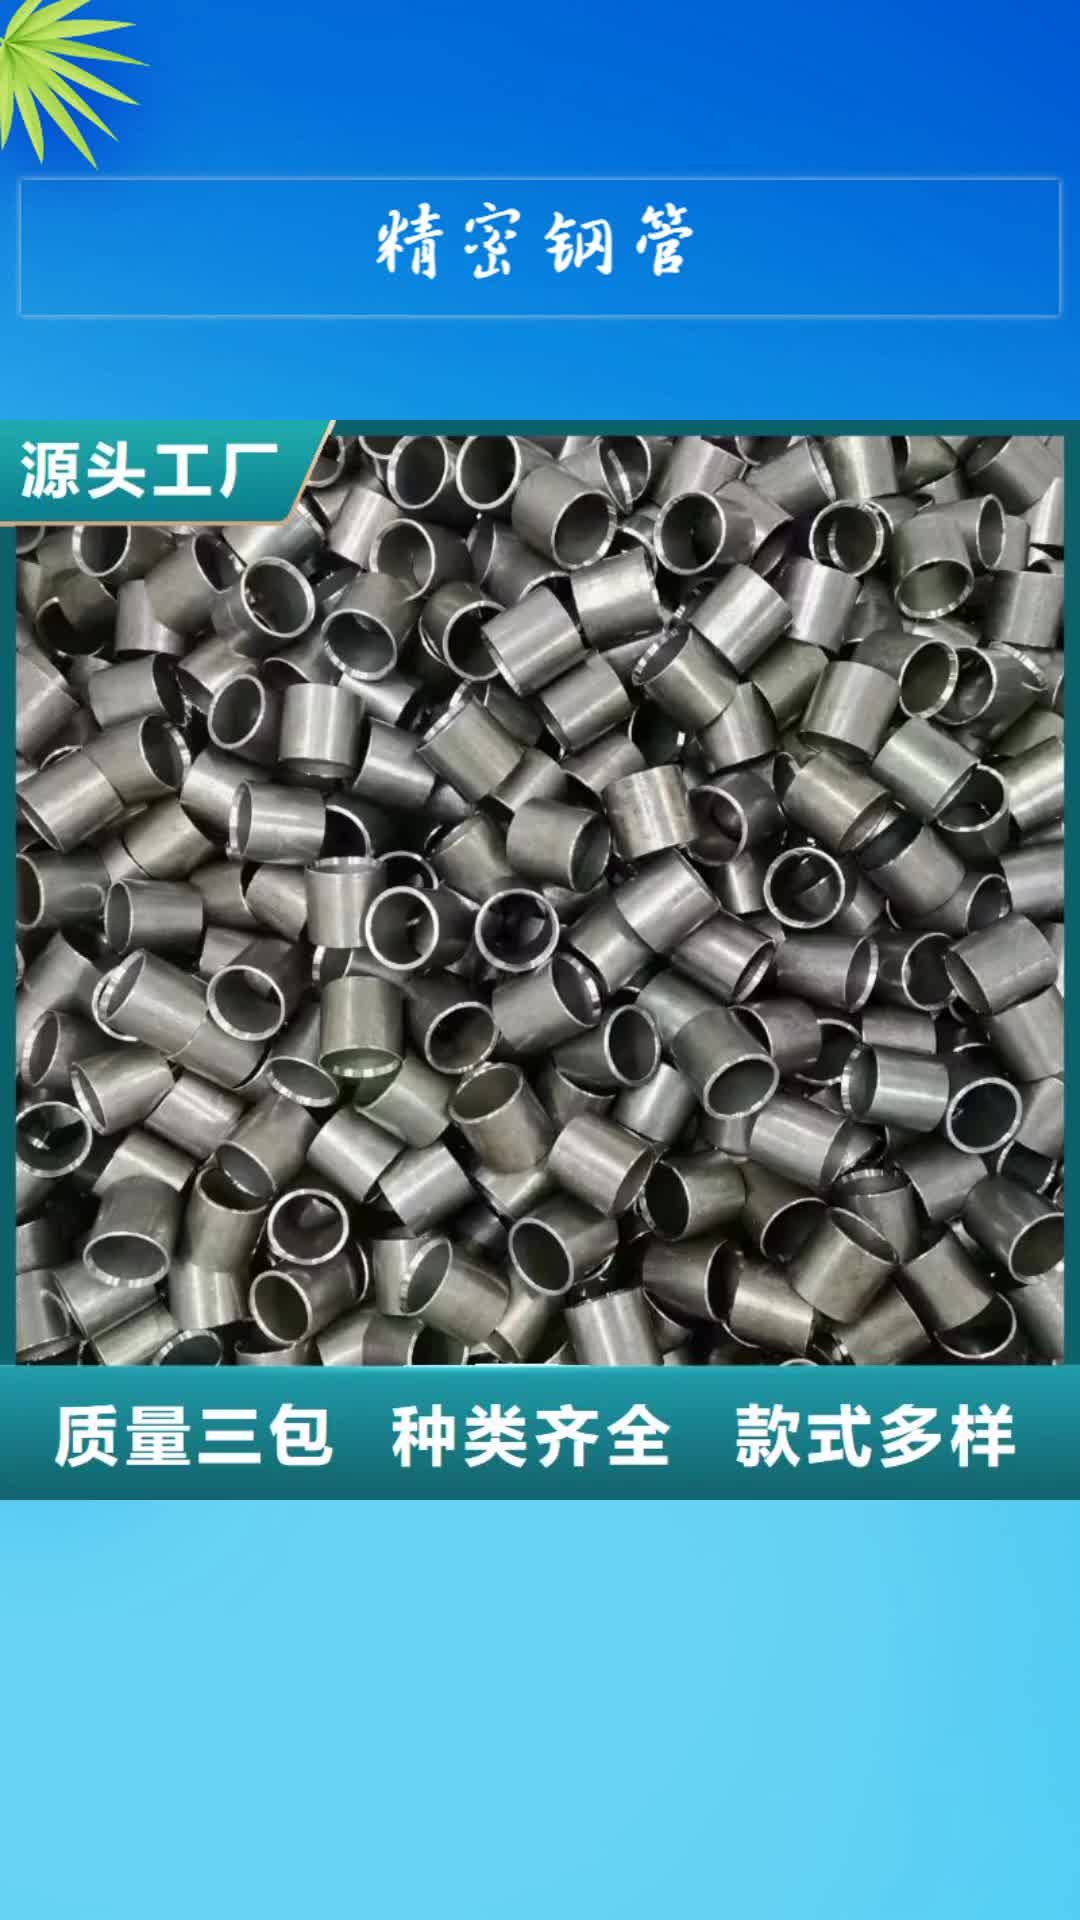 上海 精密钢管【合金管】高标准高品质